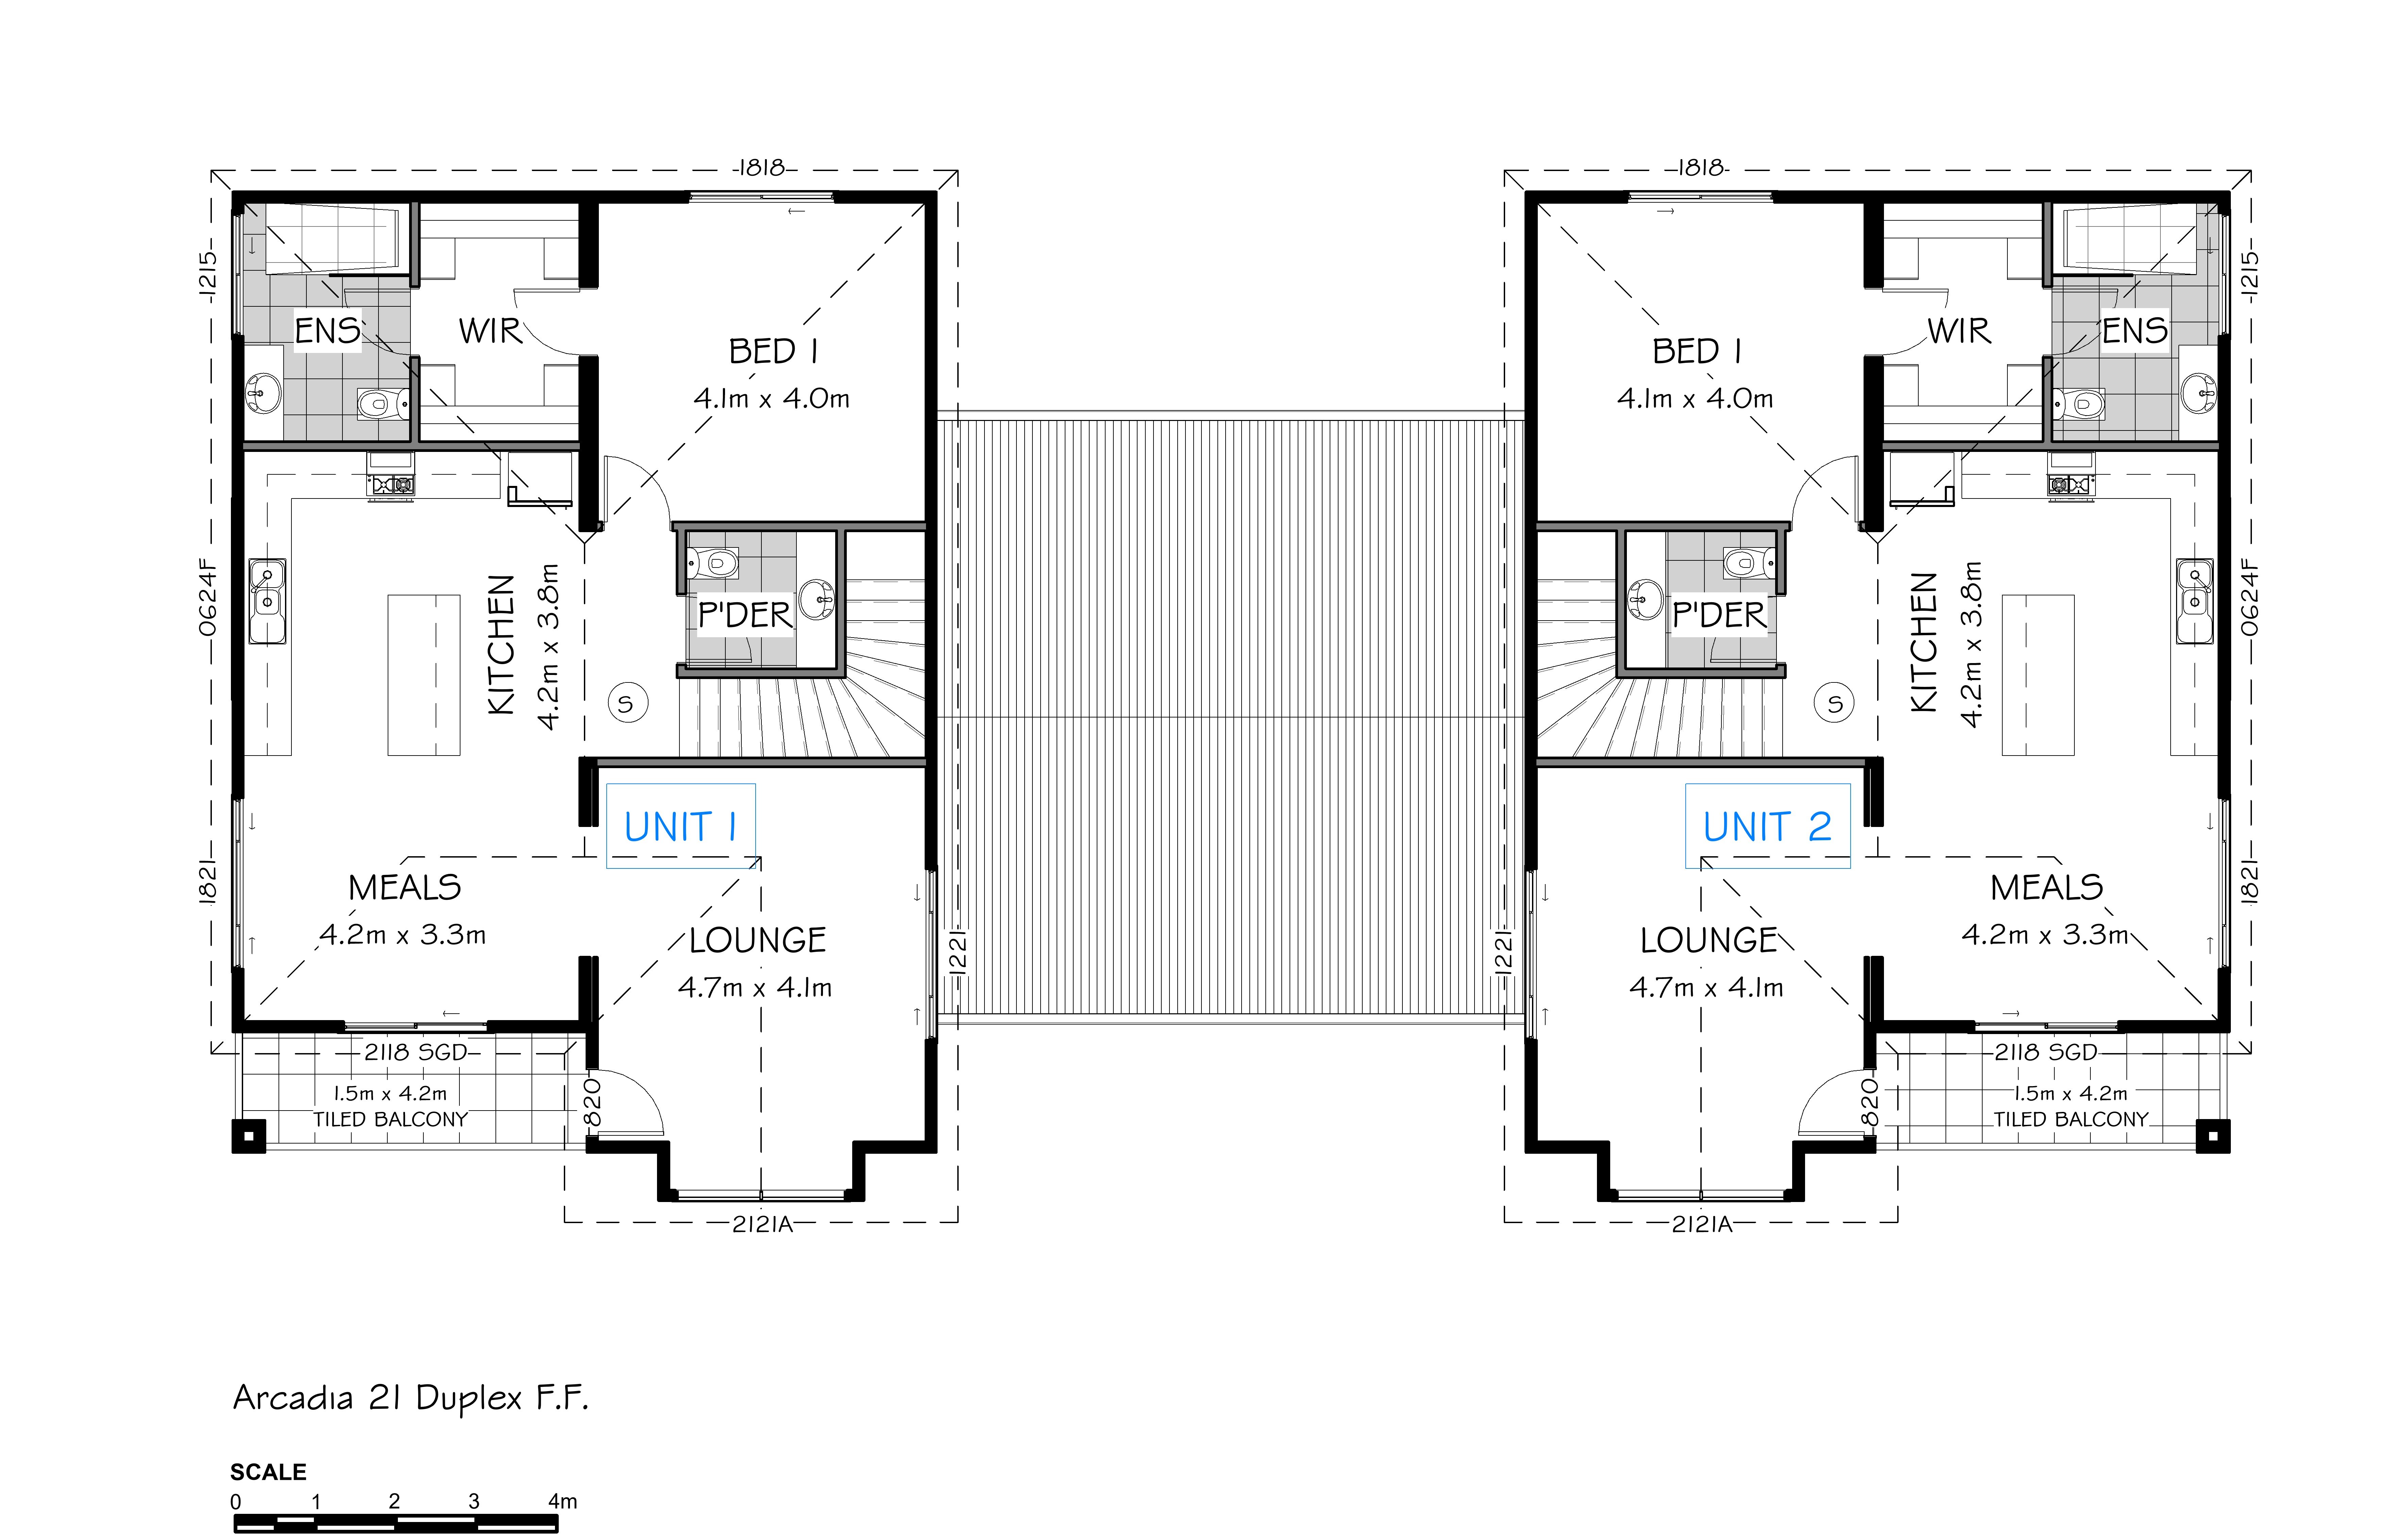 Arcadia 21 Duplex - First Floor Plan